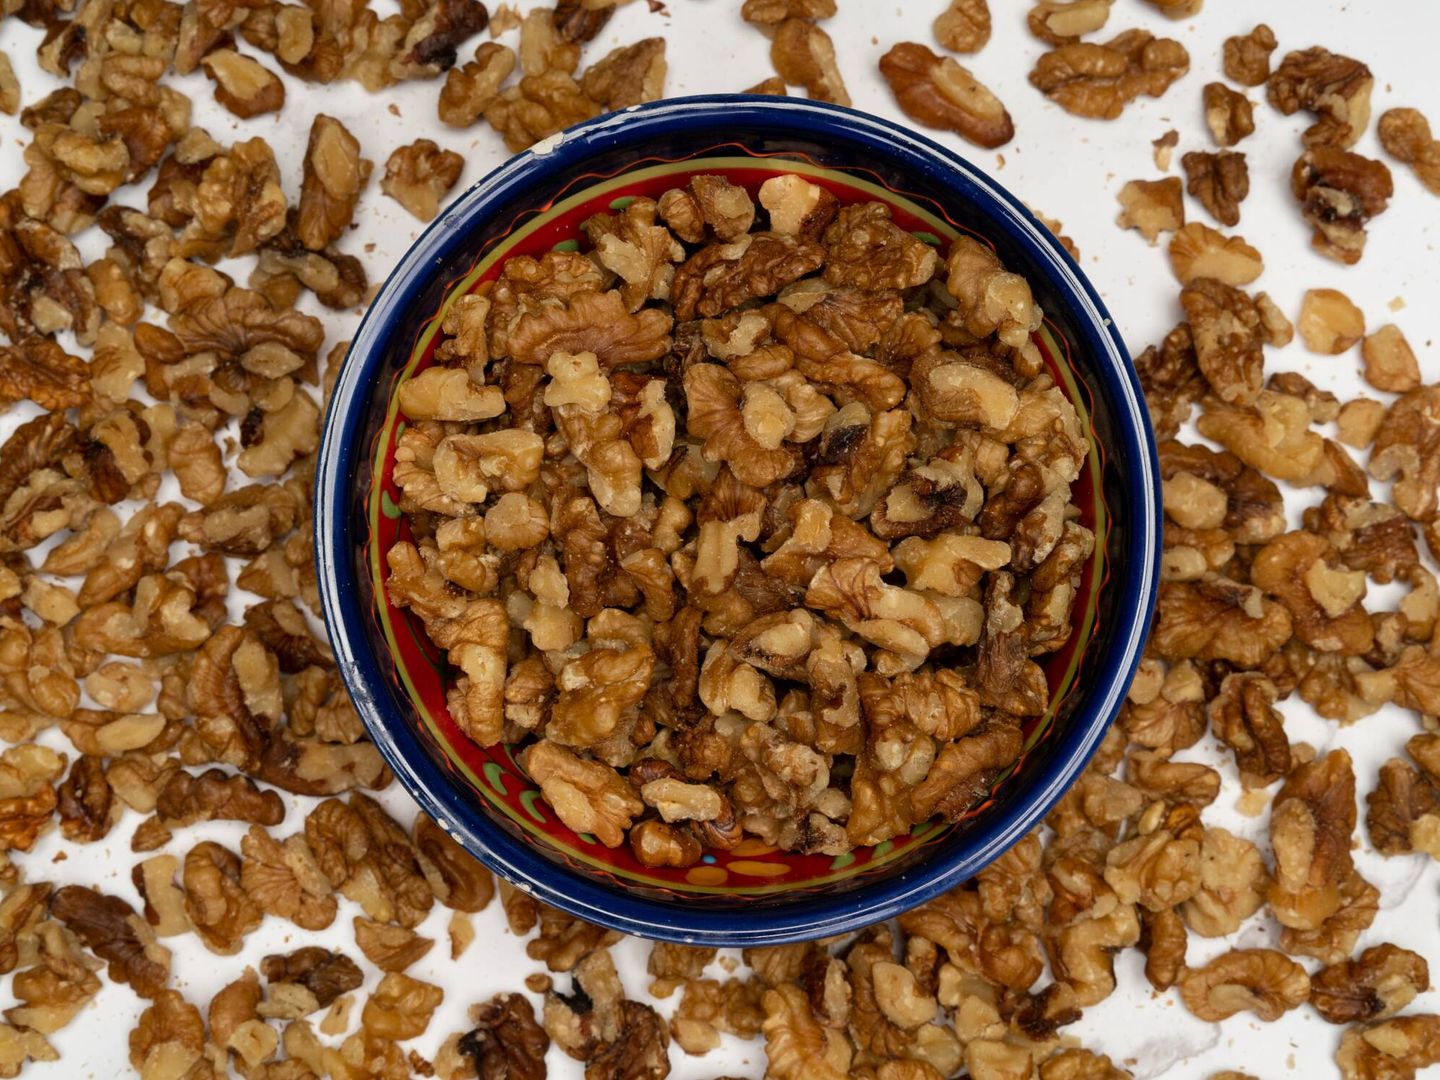 Las nueces generalmente se consideran parte de una dieta recomendable debido a sus altos niveles de proteínas, fibra y grasas saludables. (Pexels)